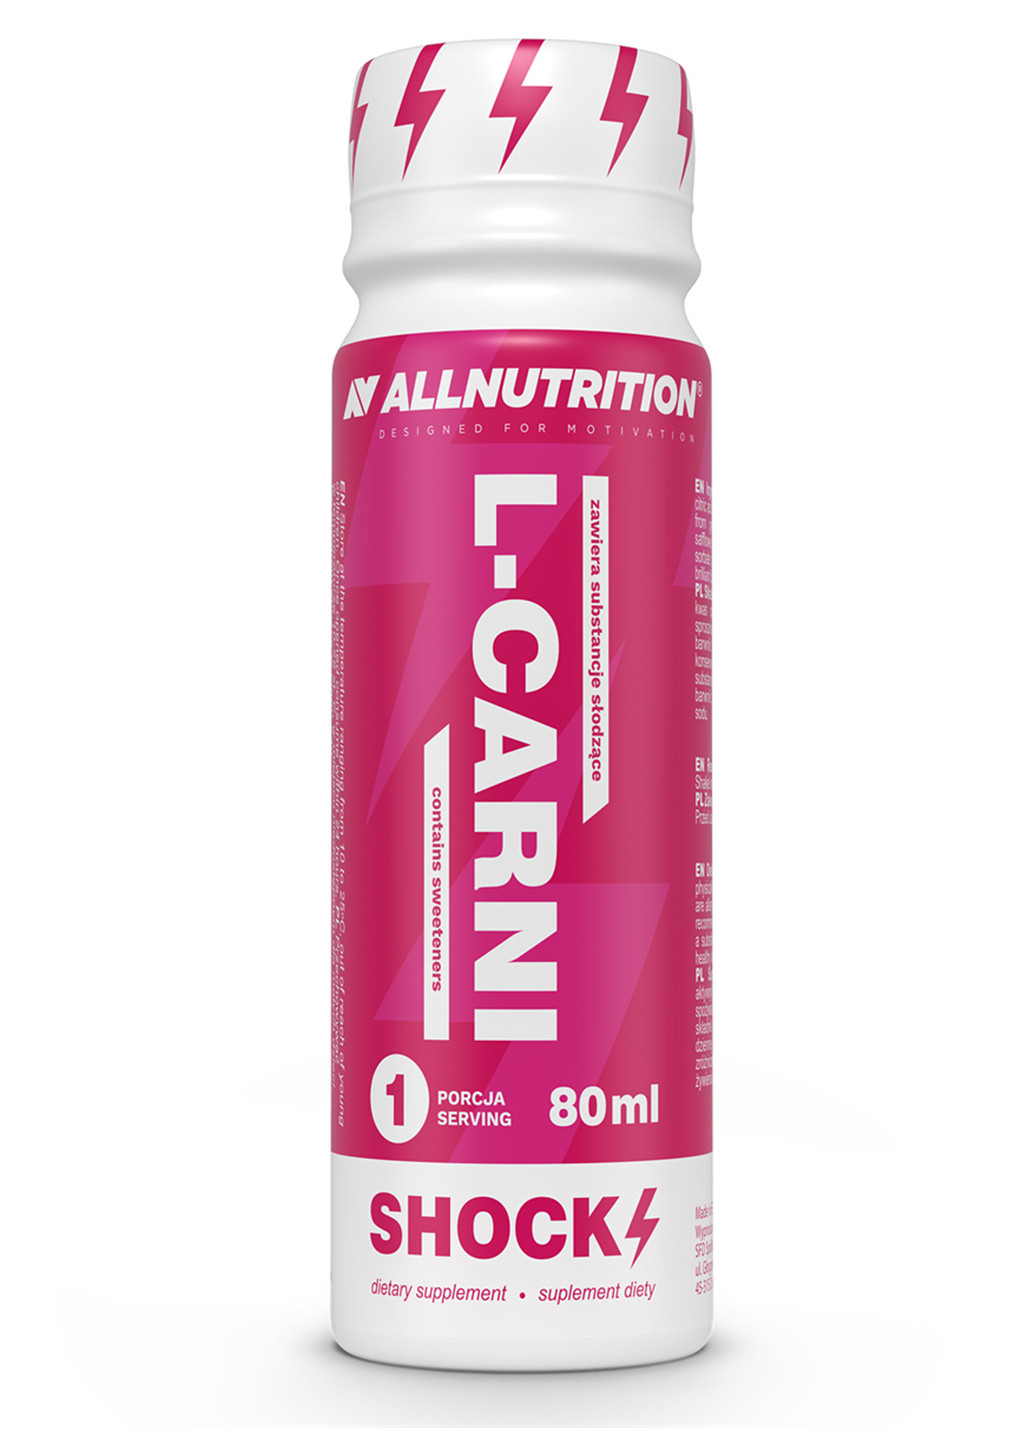 Енергетик для тренувань L-CARNI Shock Shot - 80ml Allnutrition комбінована